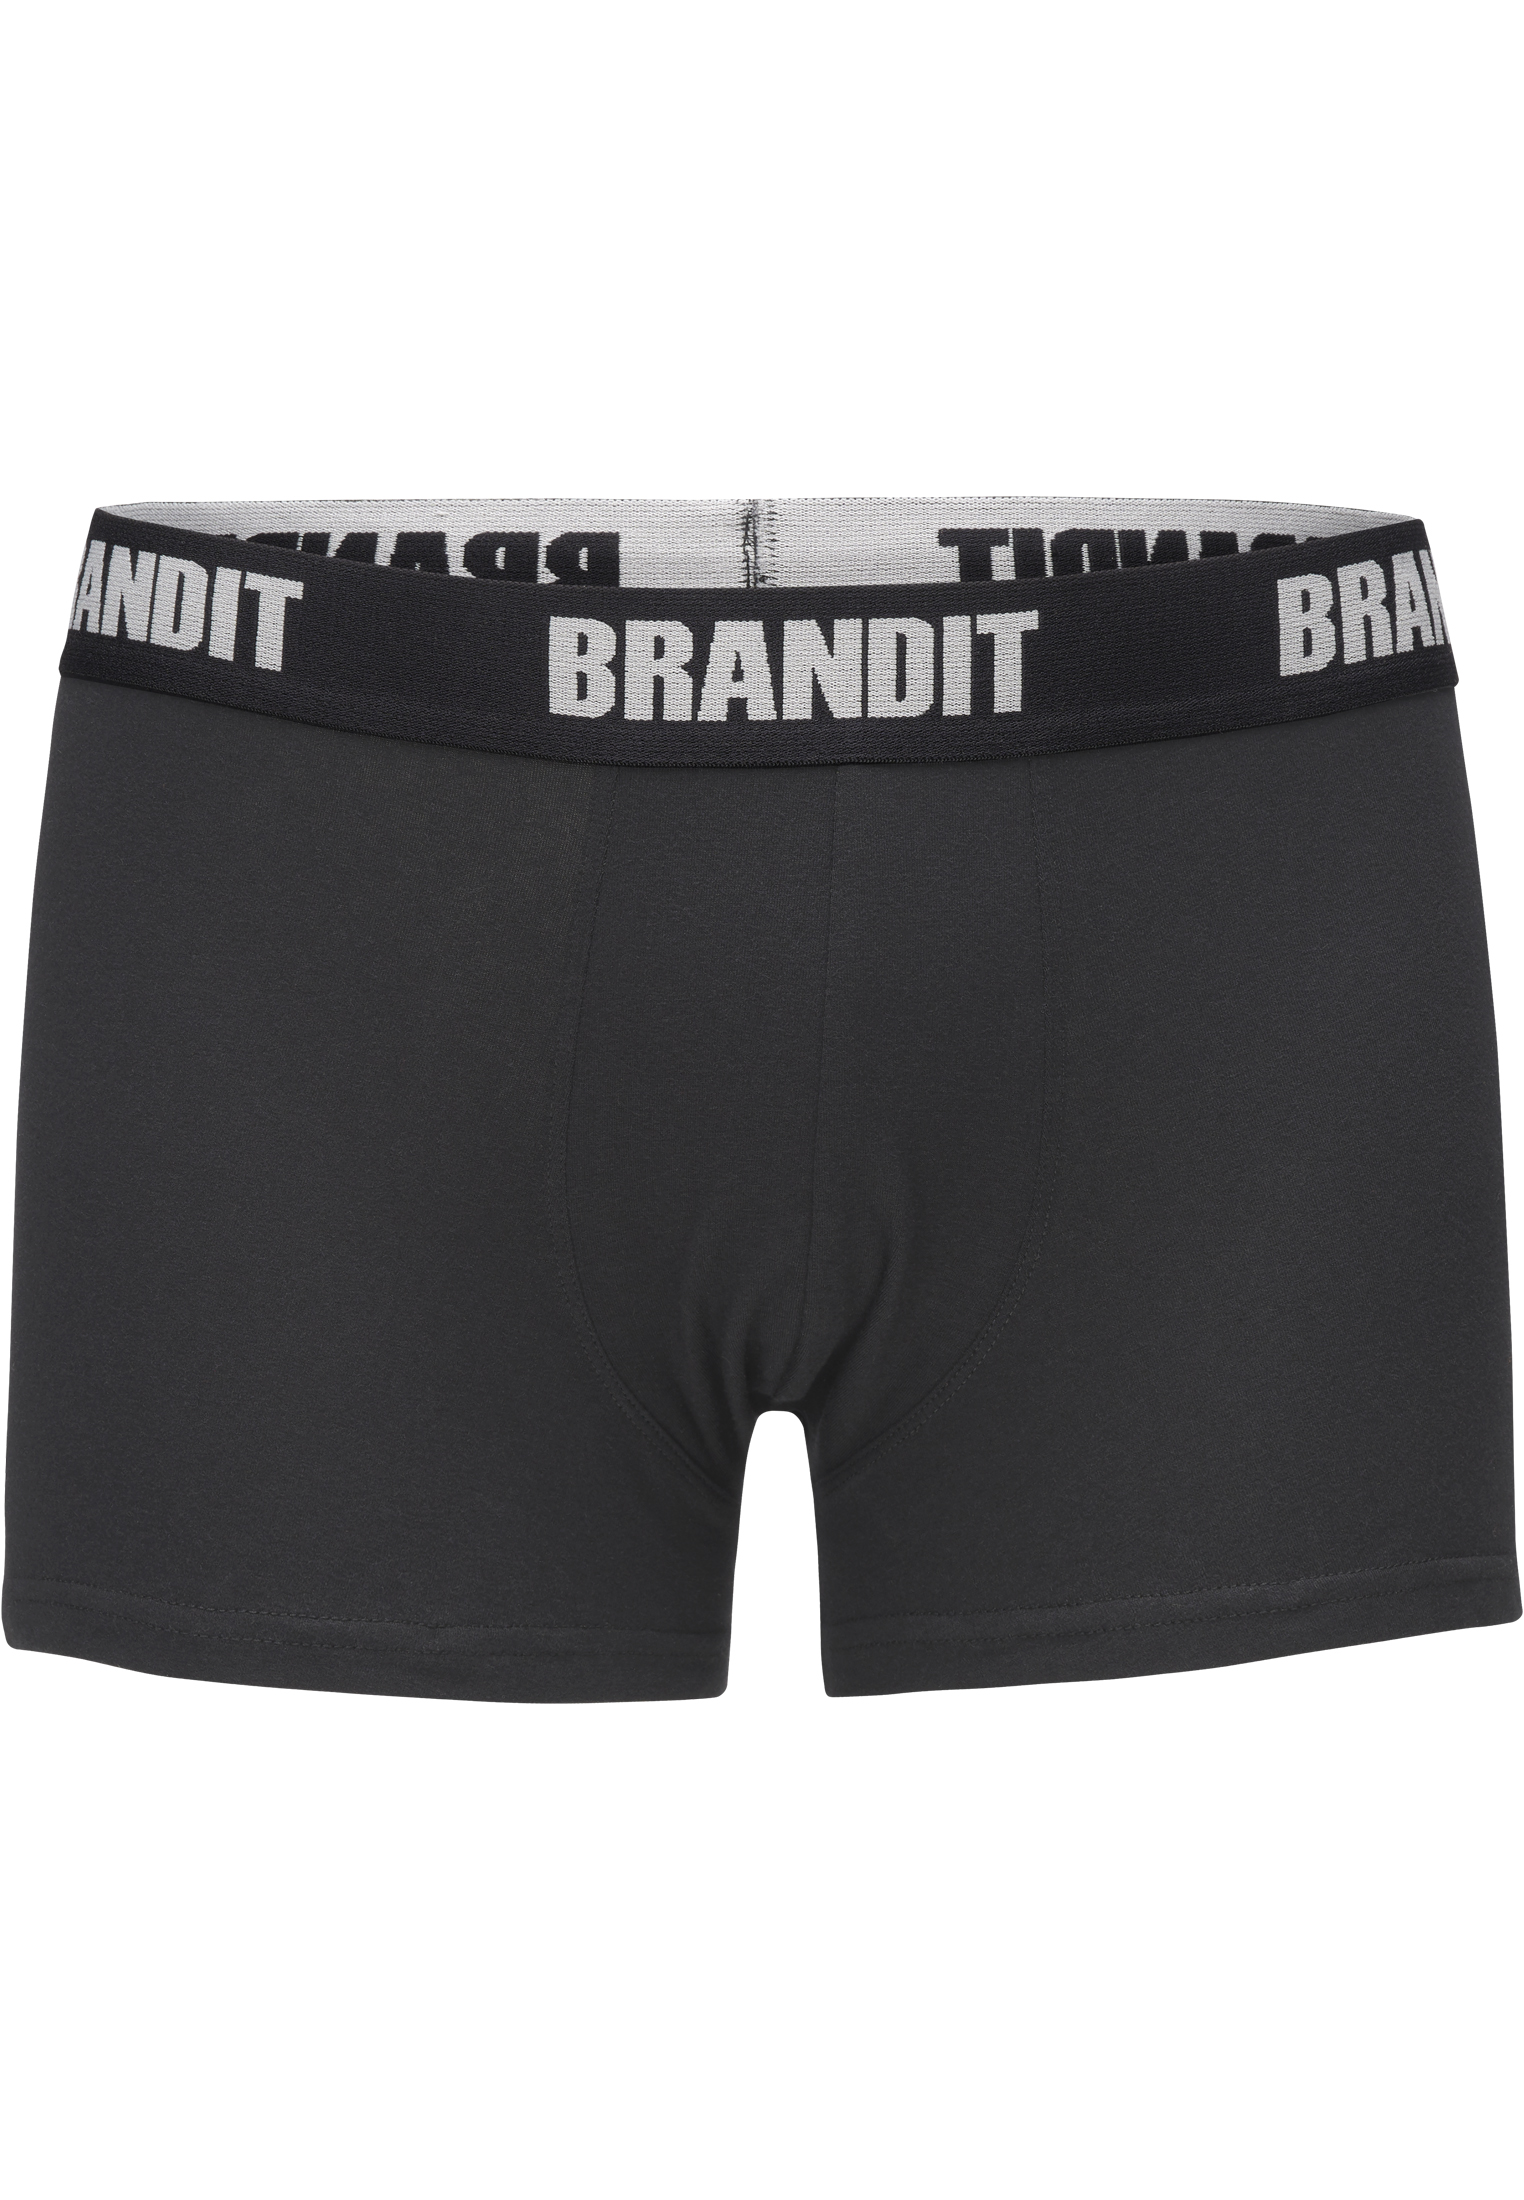 Underwear Boxershorts Logo 2er Pack in Farbe wht/blk